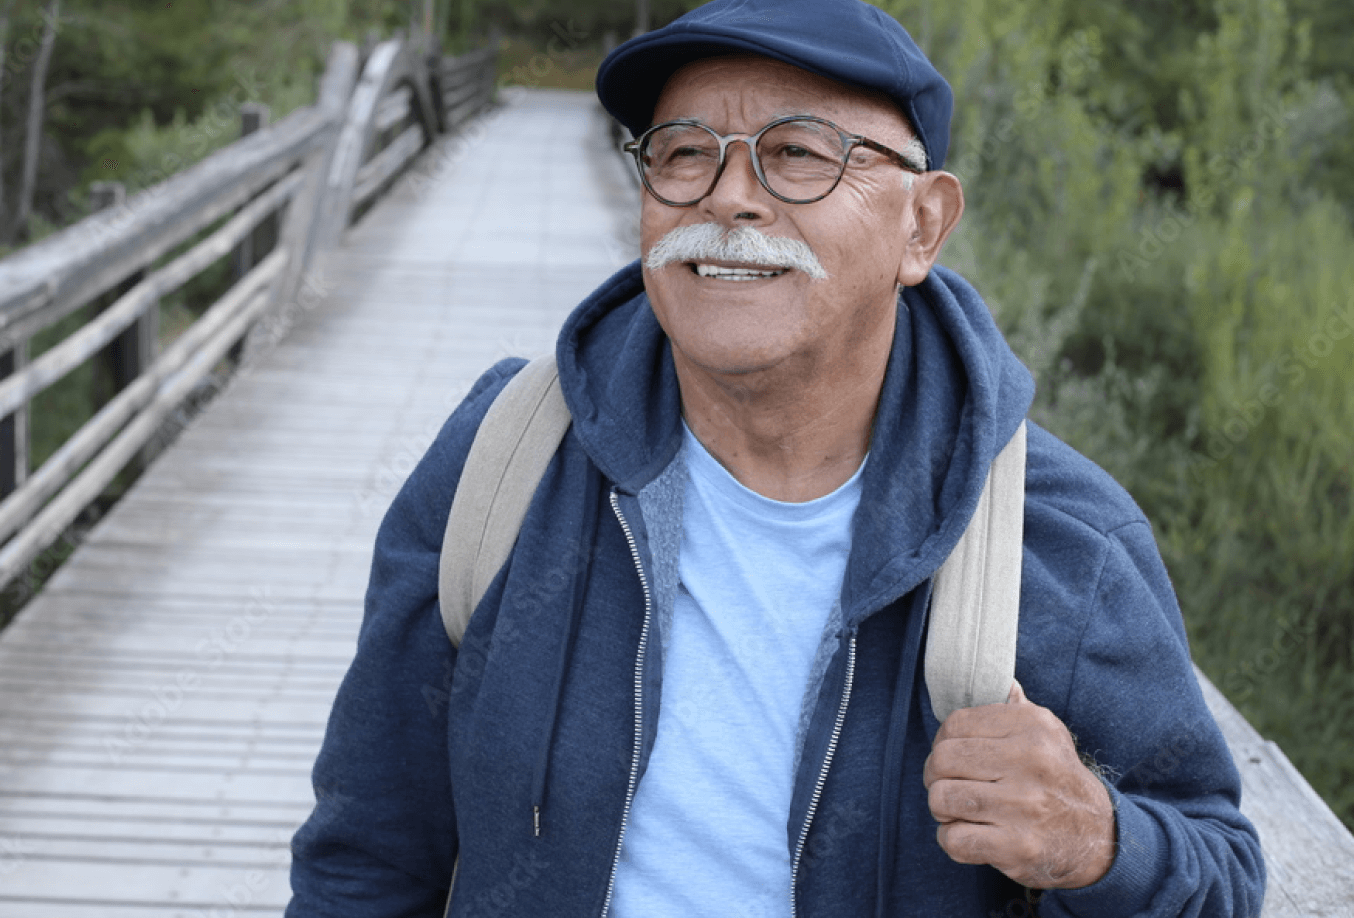 Elderly man walking on a wood bridge